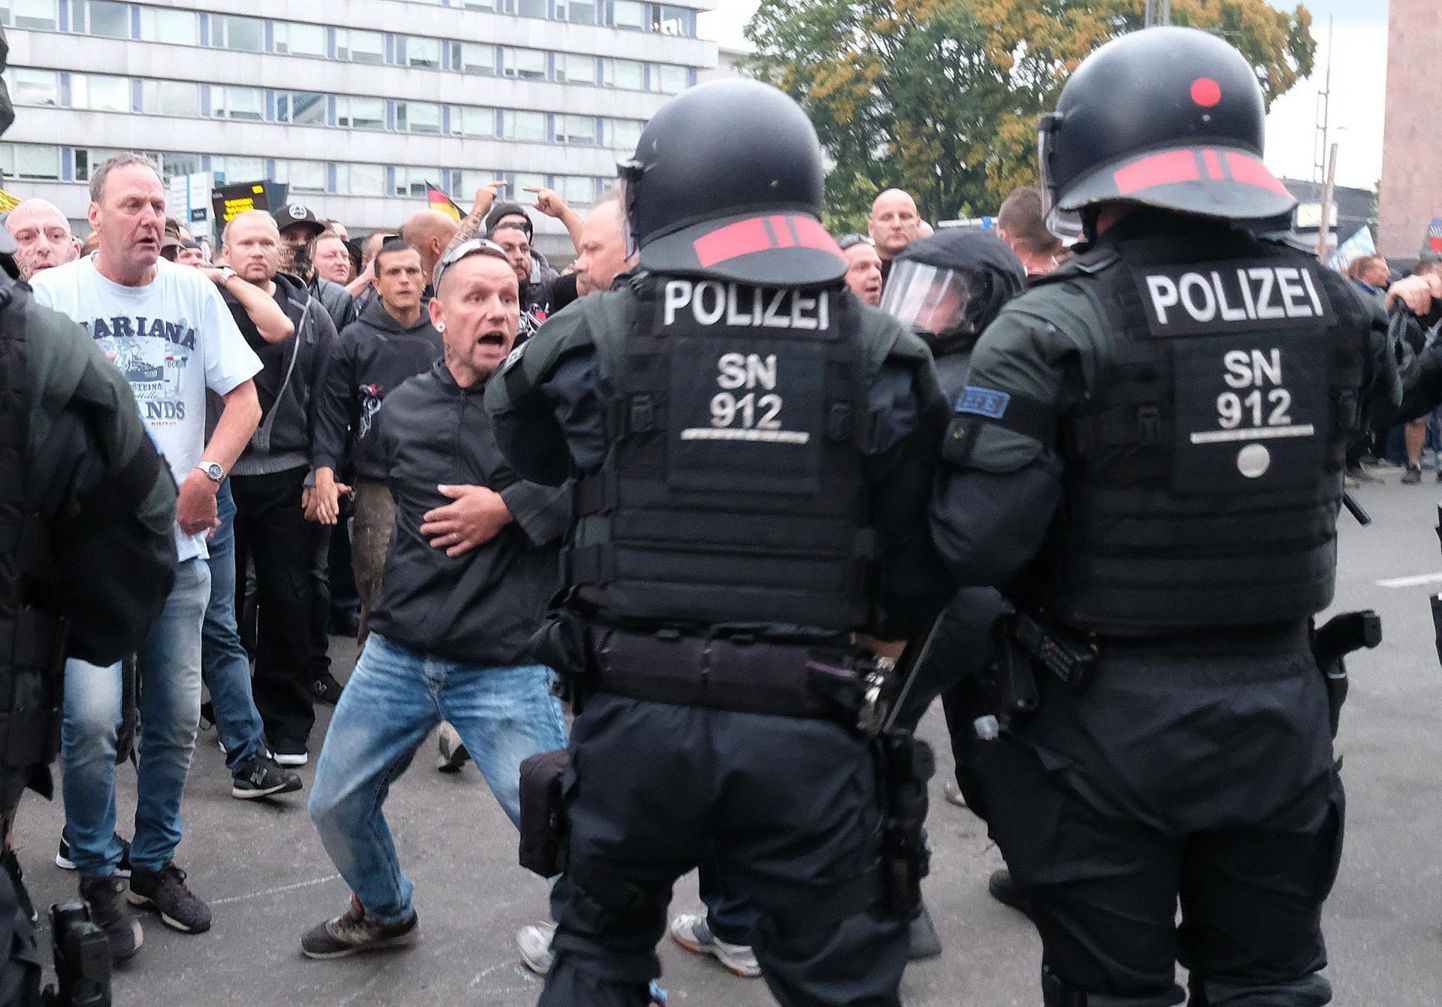 Arvulises vähemuses märulipolitseinikud pidid Chemnitzis taltsutama vasak- ja paremäärmuslasi.